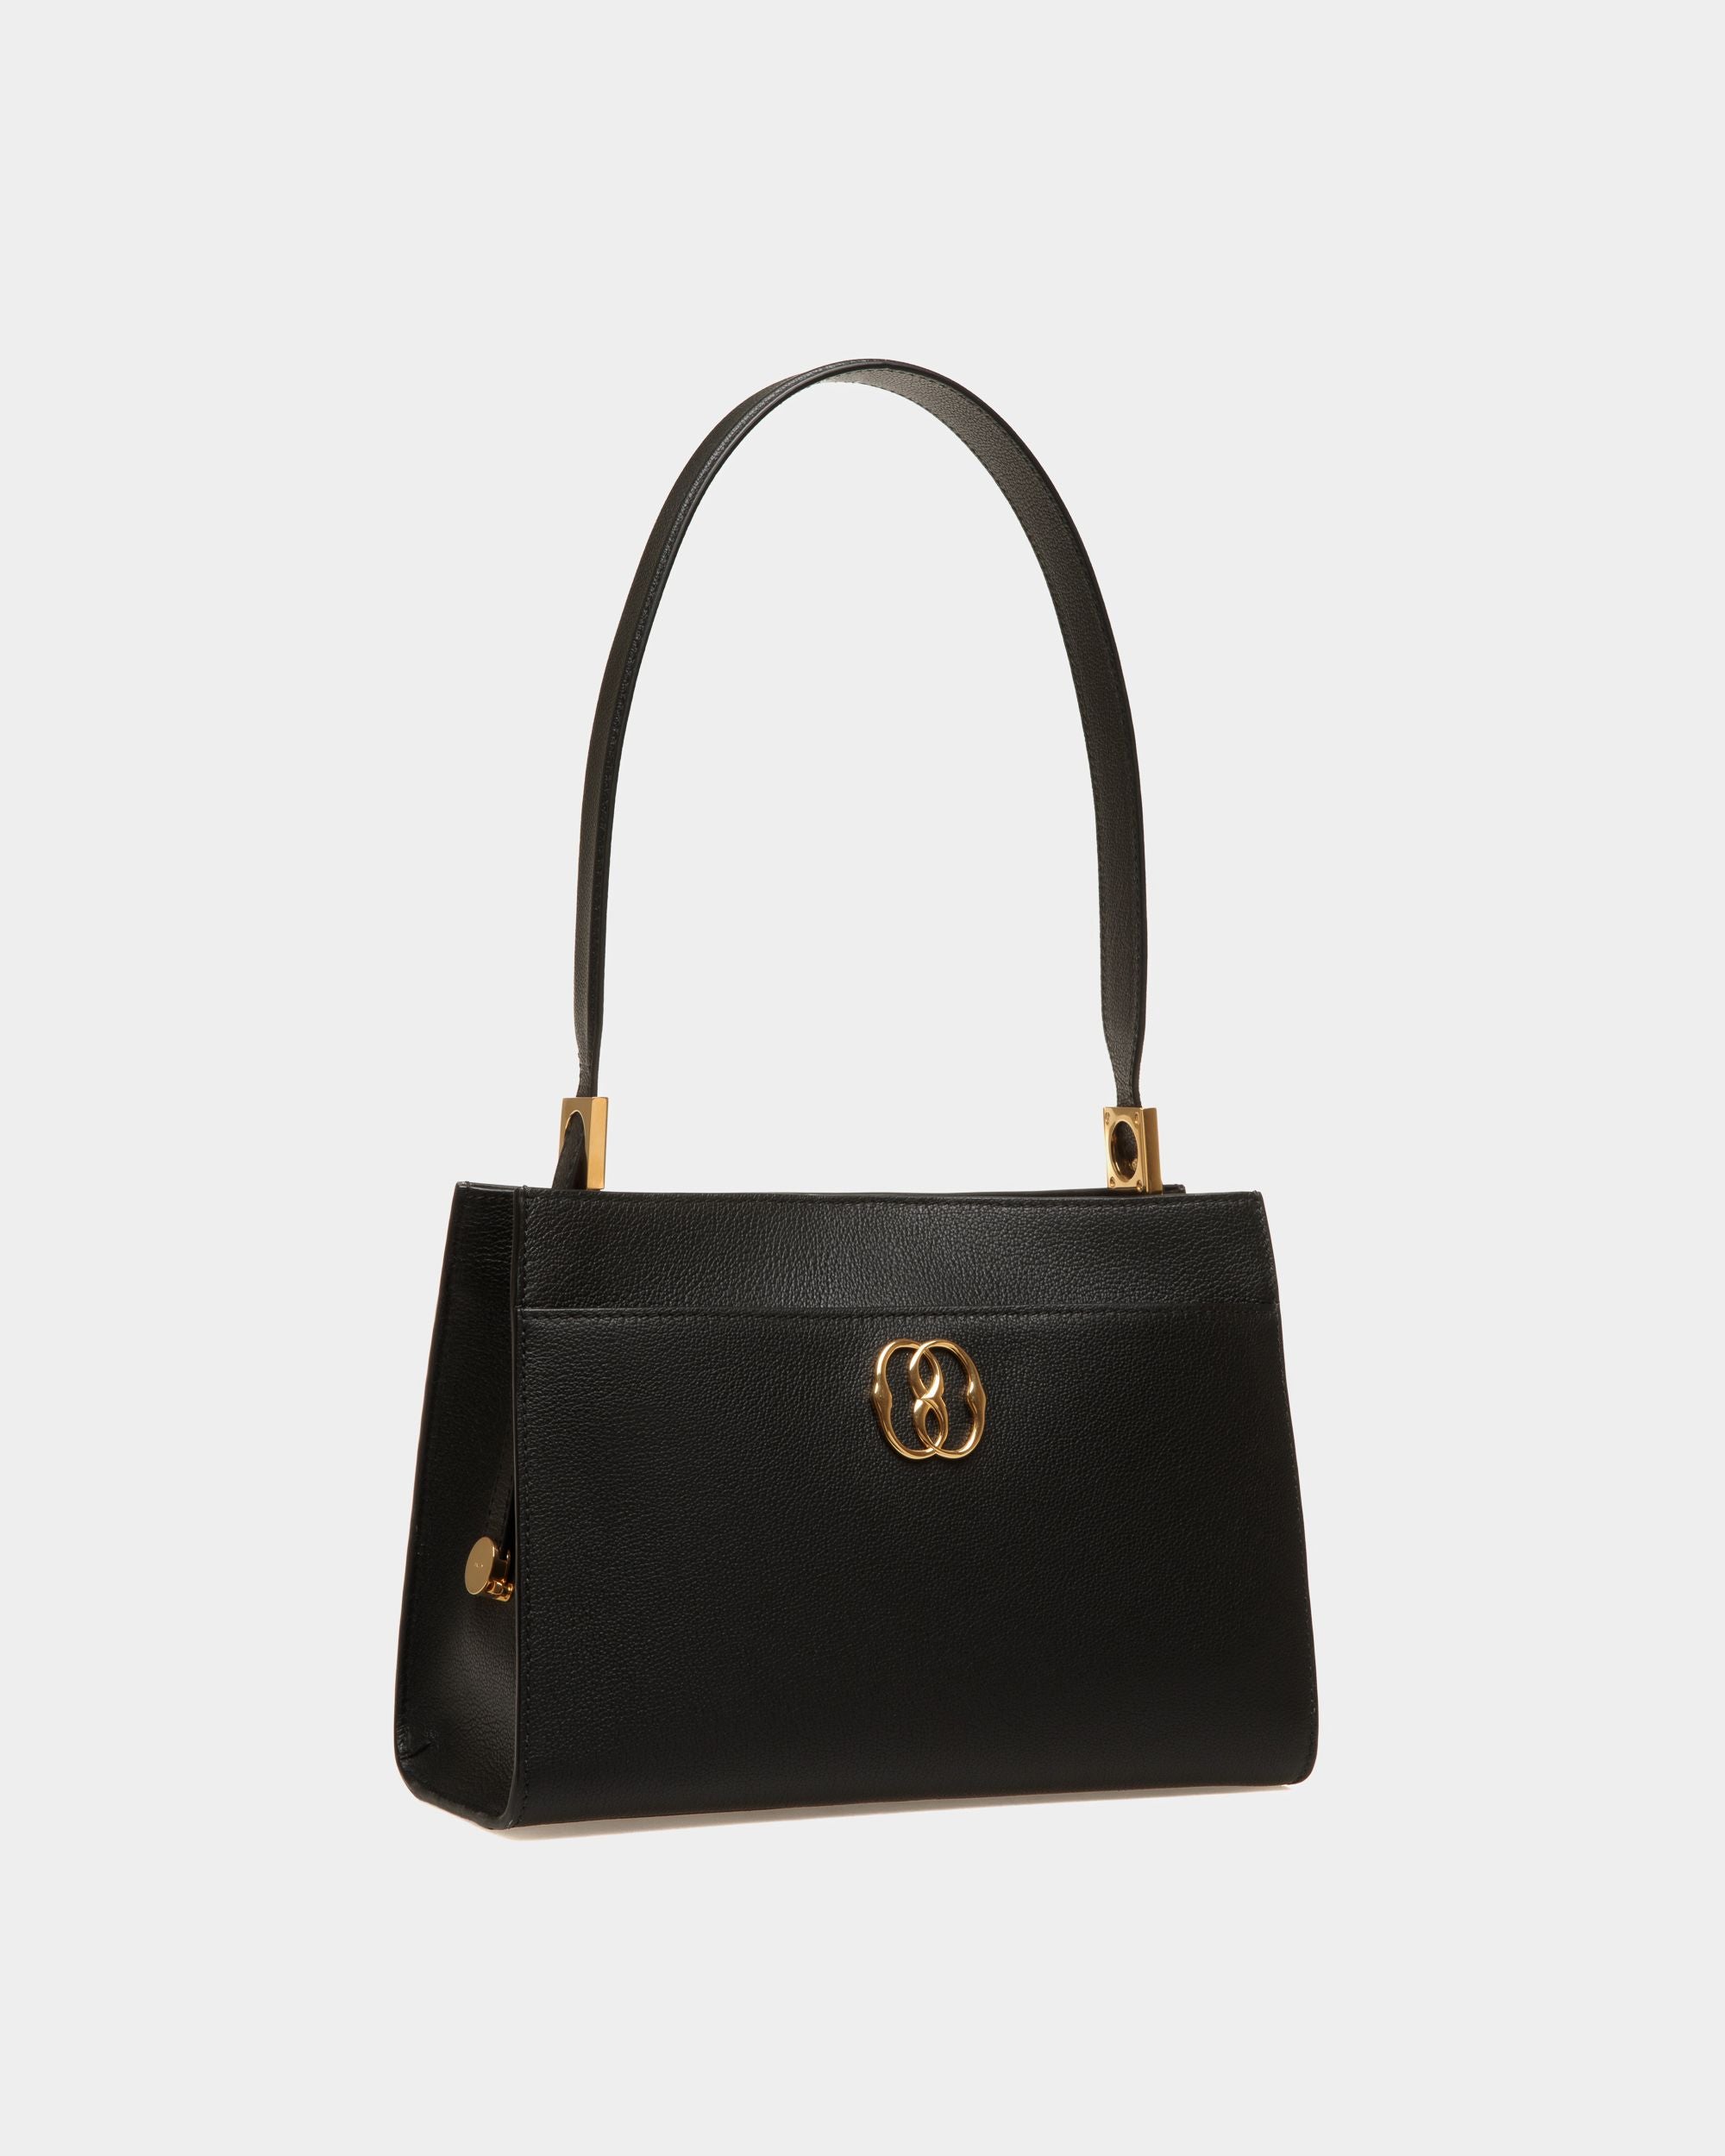 Emblem | Women's Shoulder Bag in Black Grained Leather | Bally | Still Life 3/4 Front